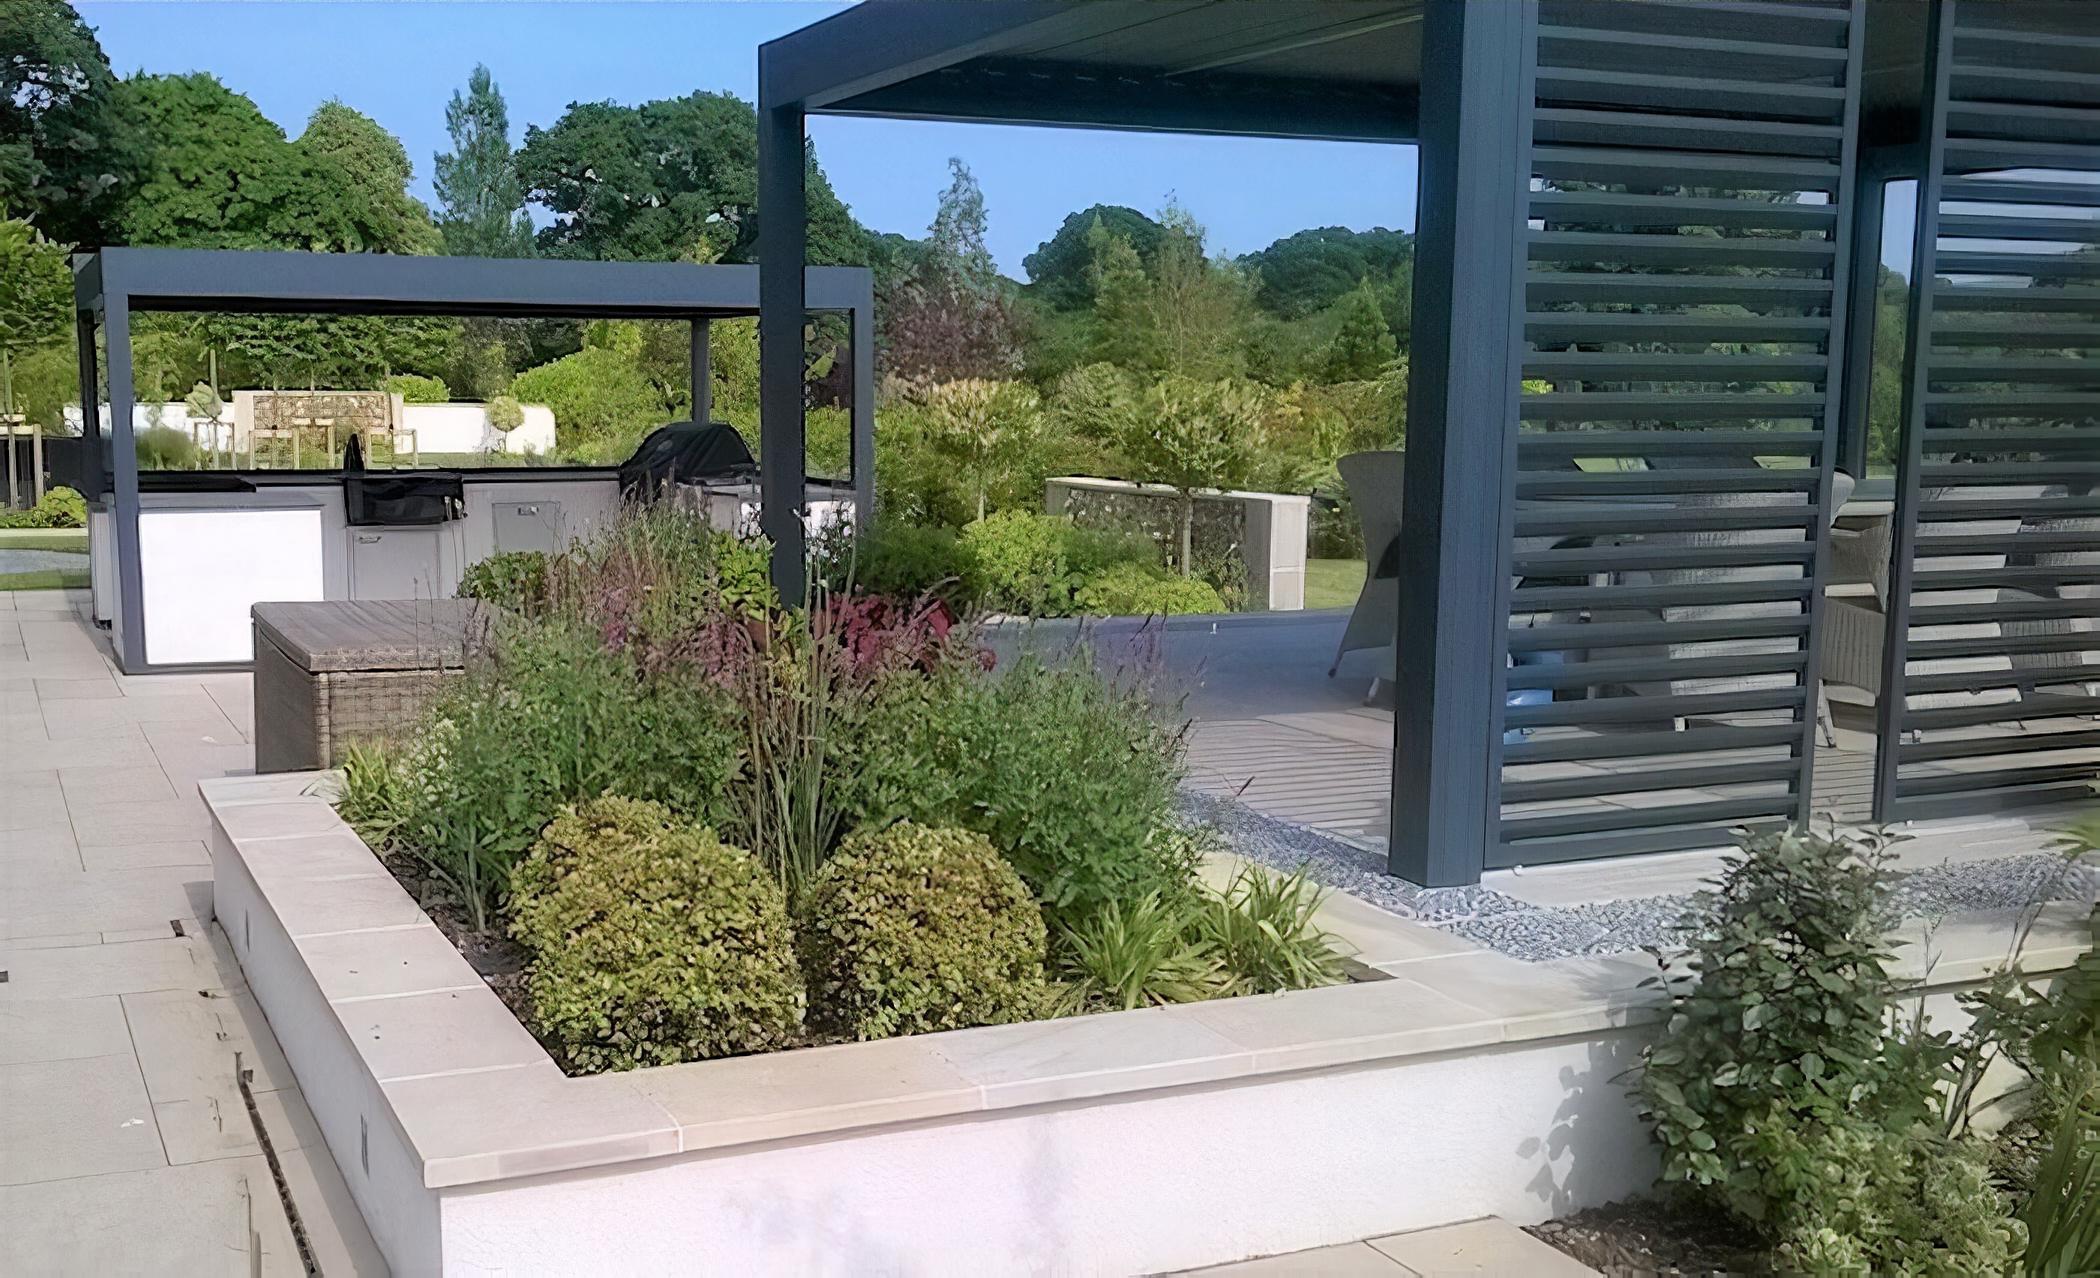 Luxury Living Garden by Sussex based garden designer Anna Helps